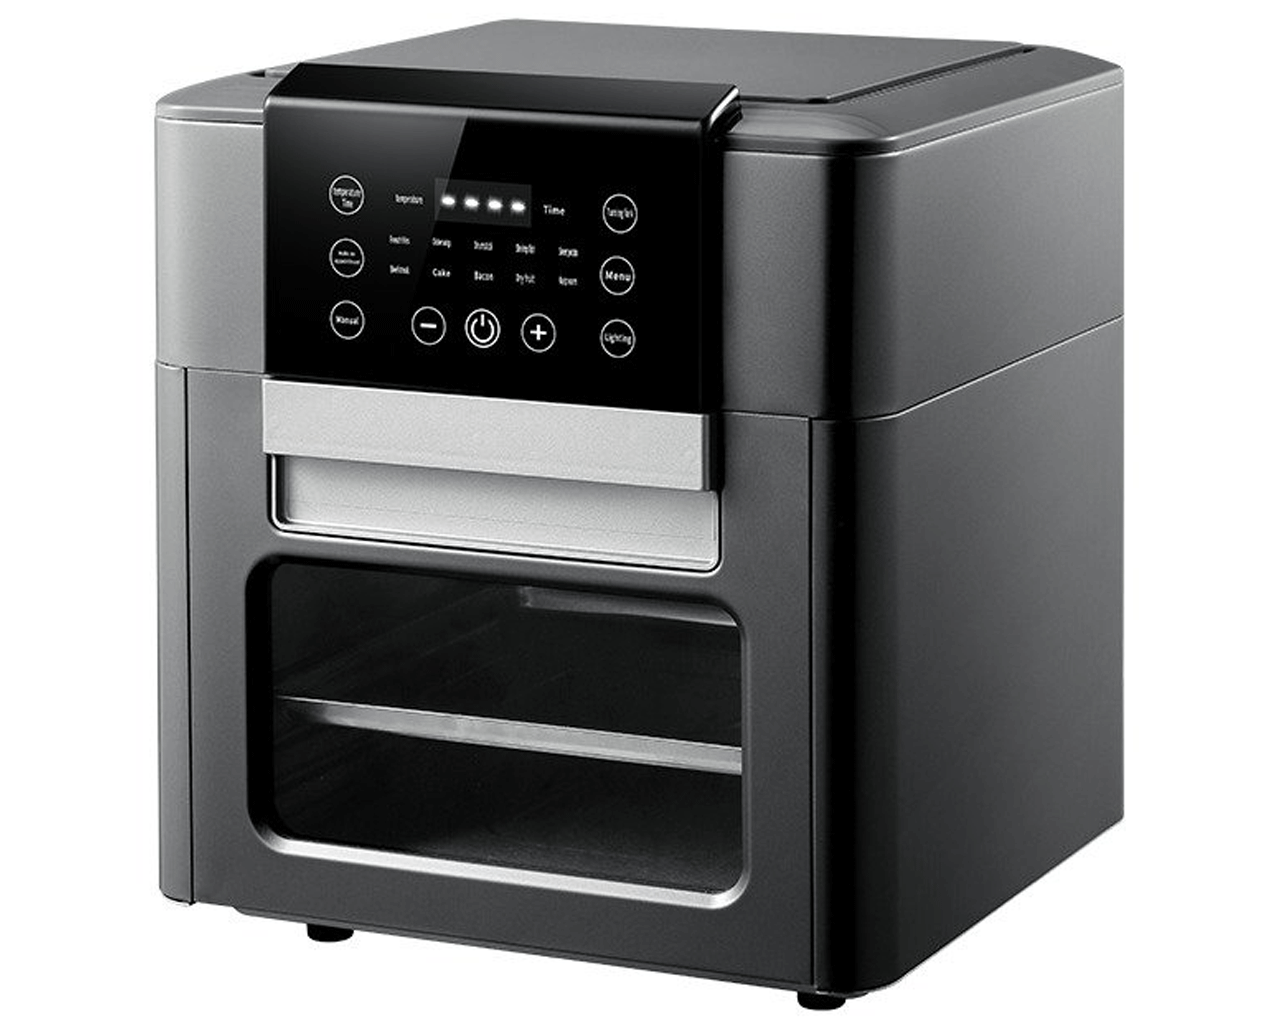 Digital Air Fryer Oven, Black, 10-Qt. Capacity